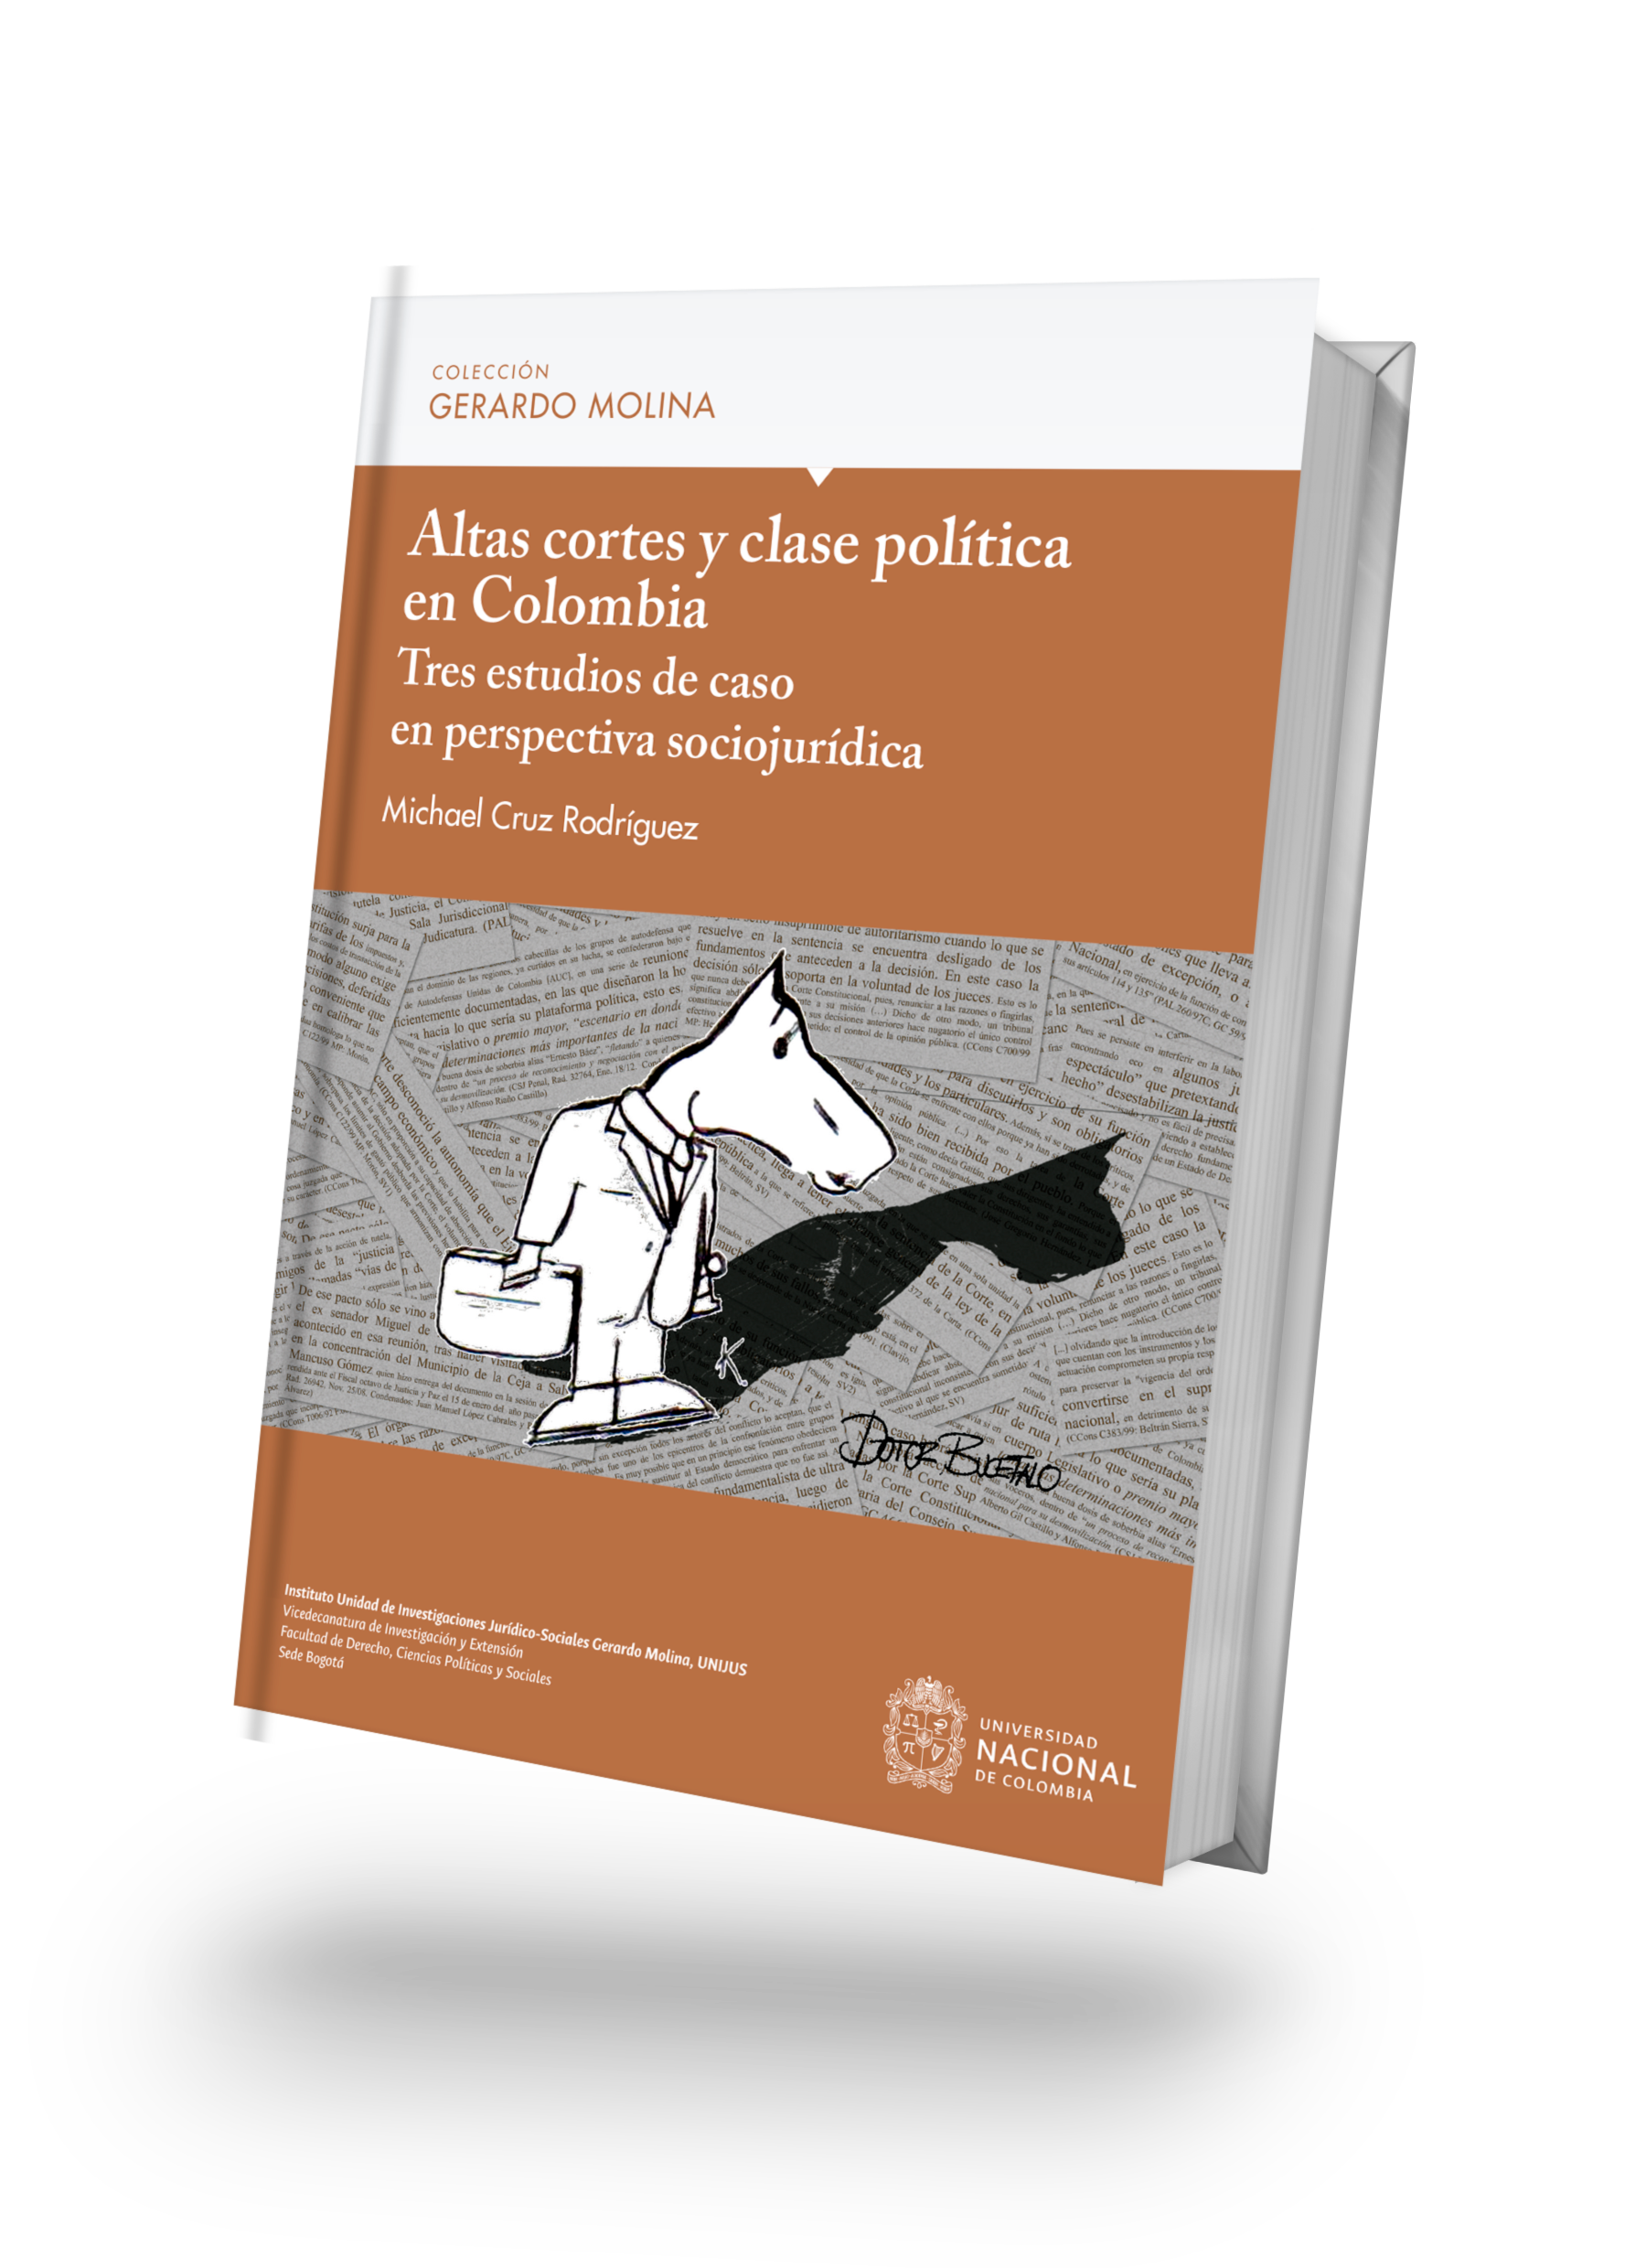 Altas  cortes  y  la  clase  politica  en  Colombia.  Tres  estudios  de  caso  en  perspectiva  sociojurídica